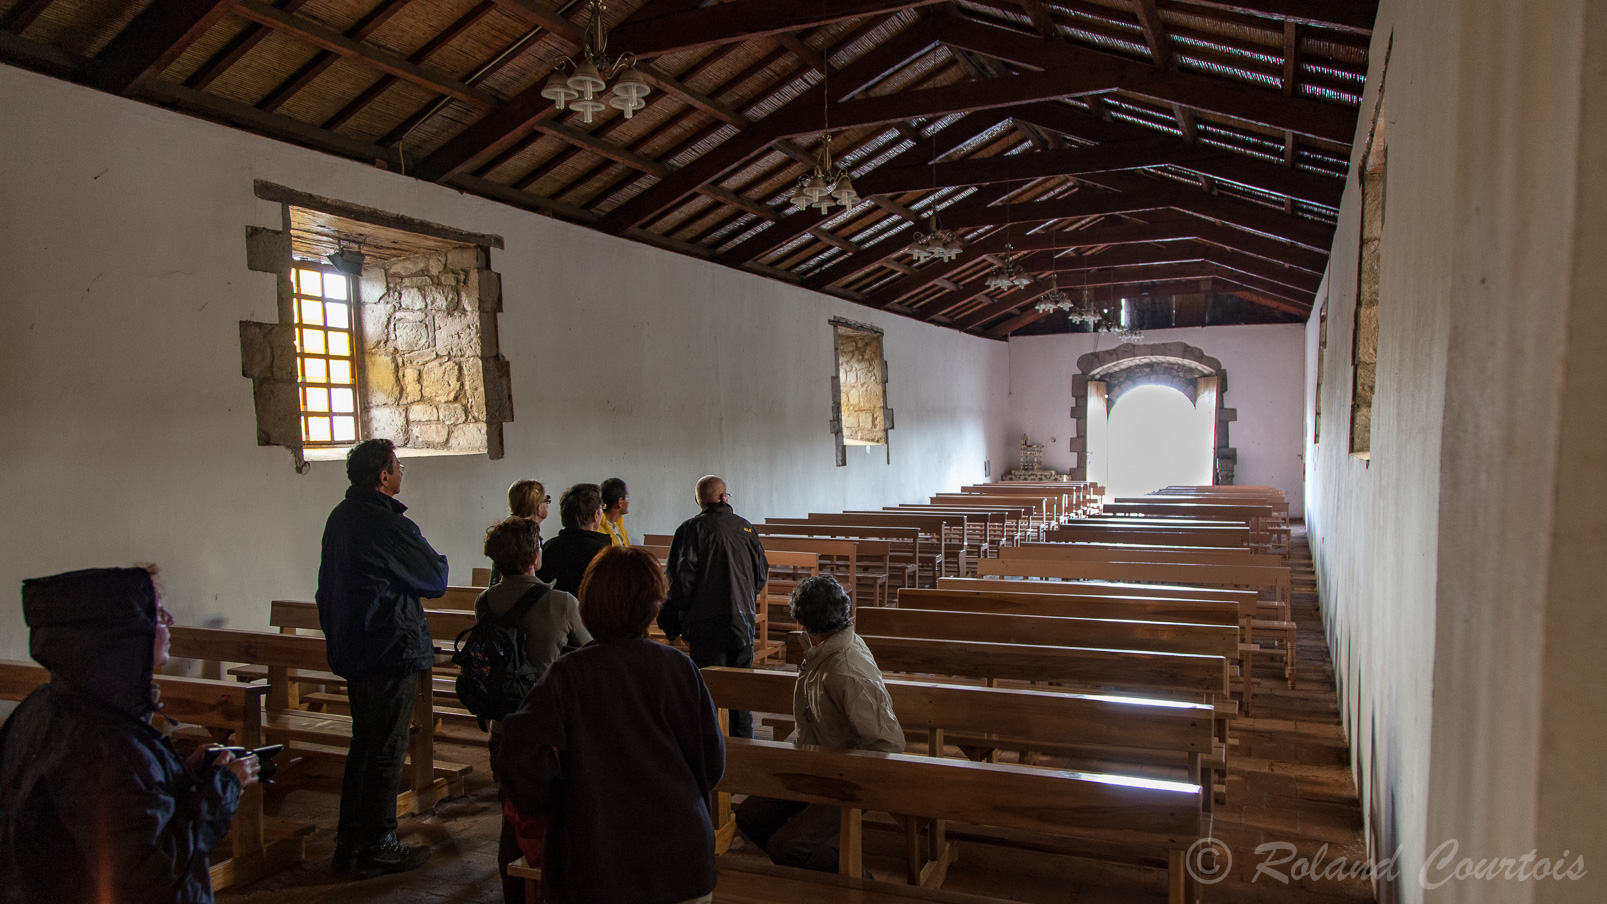 Première église de l'Equateur construite en 1534